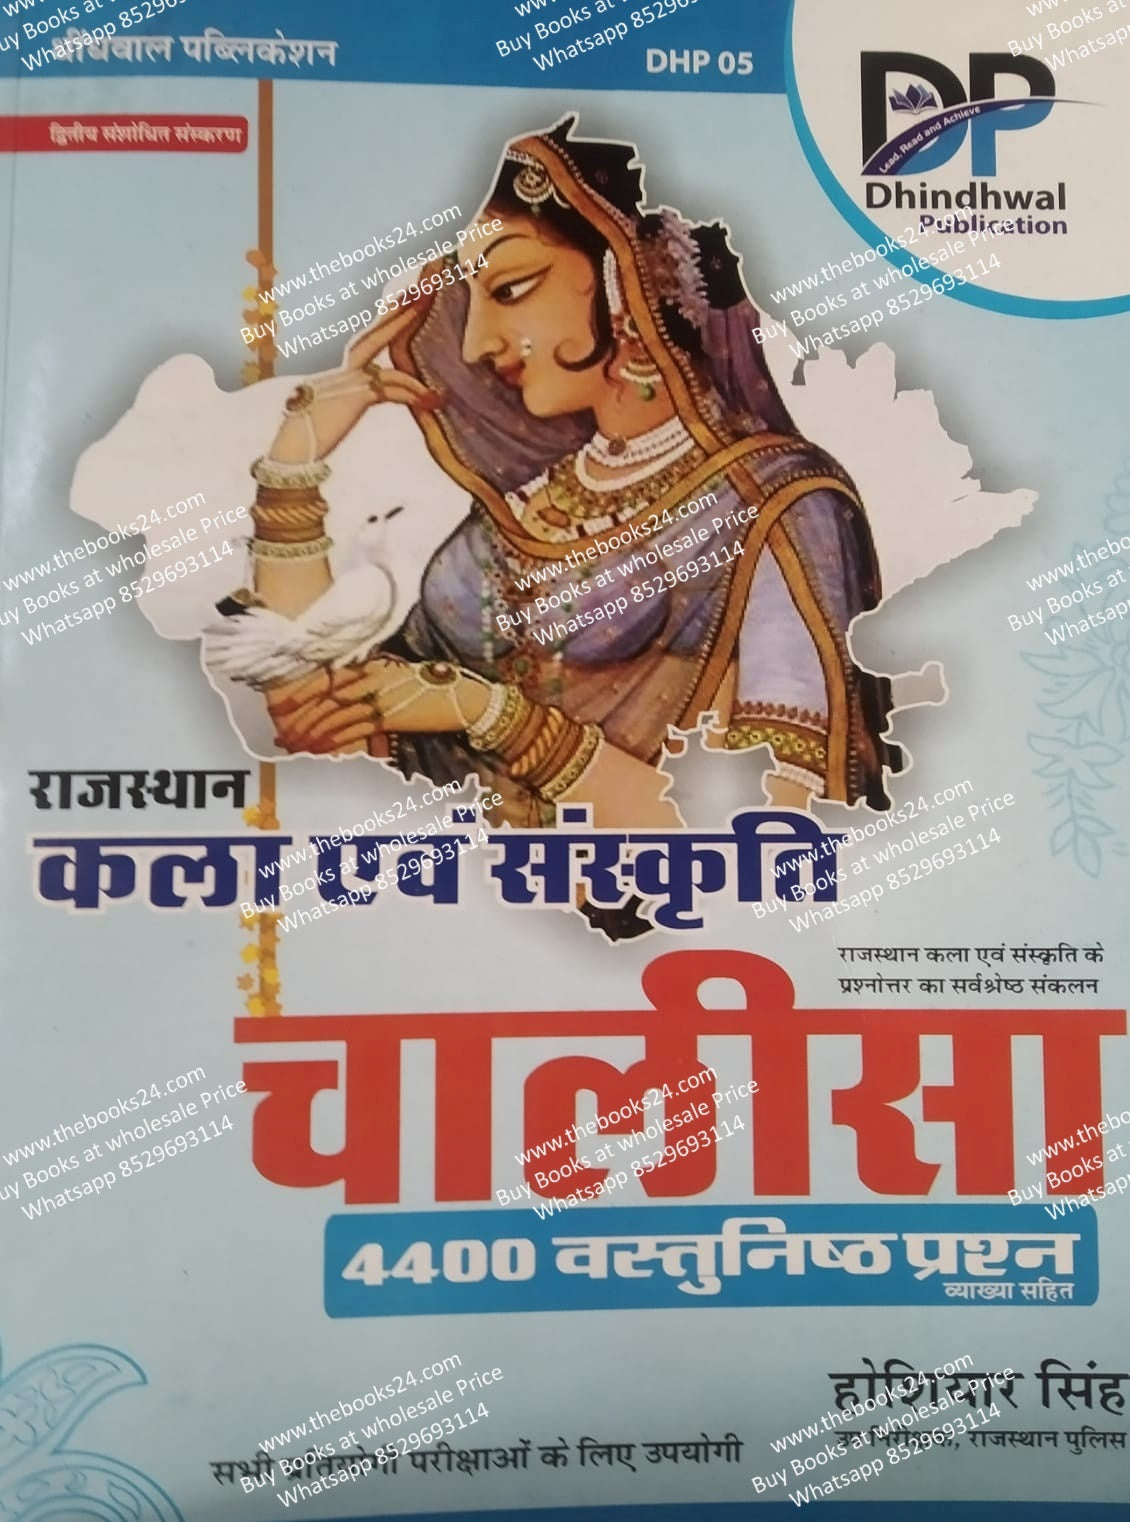 Dhindhwal Rajasthan Kala evm Sanskriti Chalisha (4000 Vastunisth Prashan)